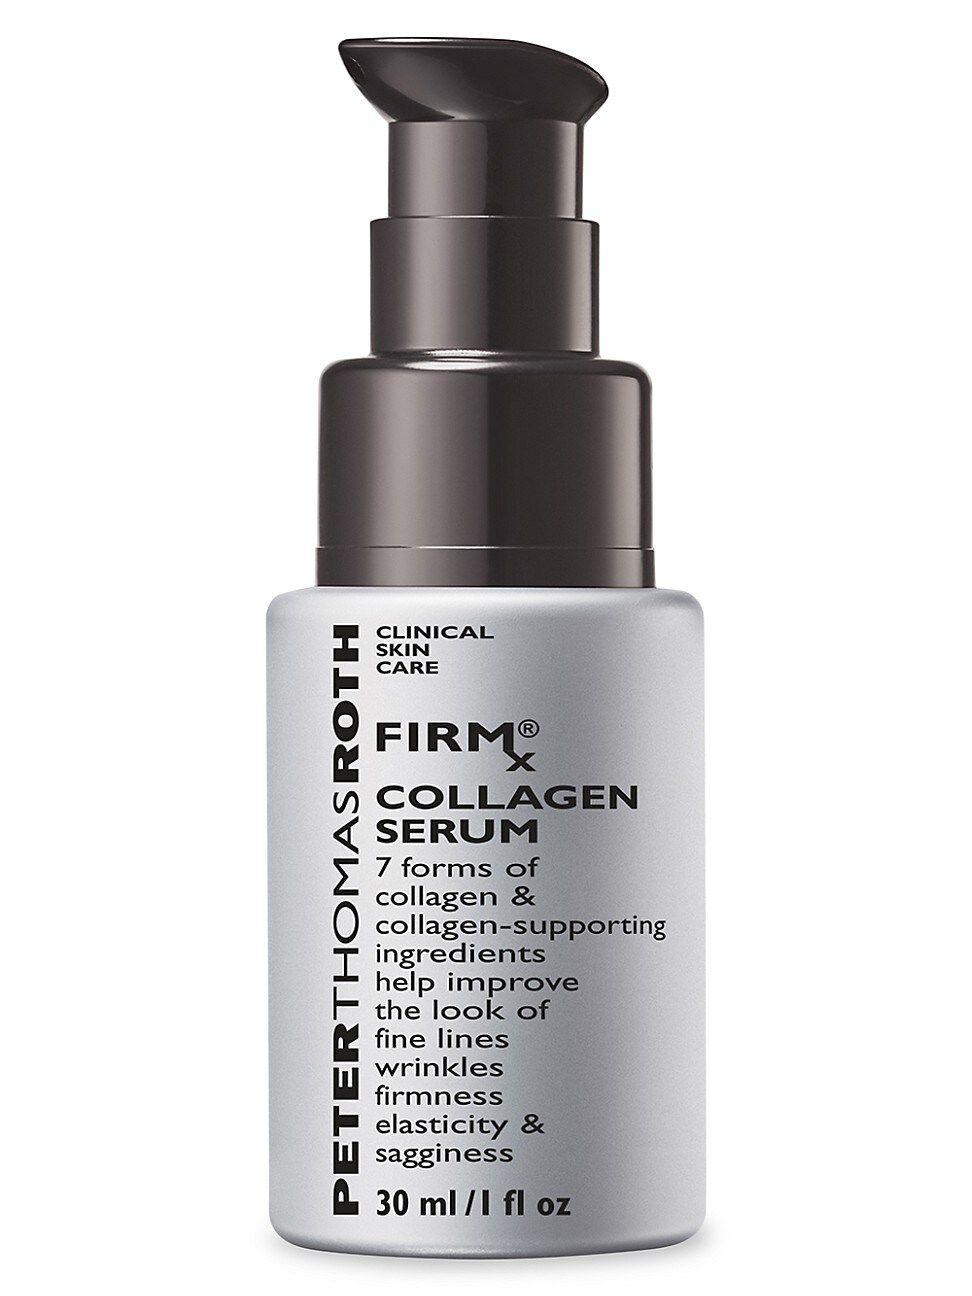 Firmx Collagen Serum | Saks Fifth Avenue